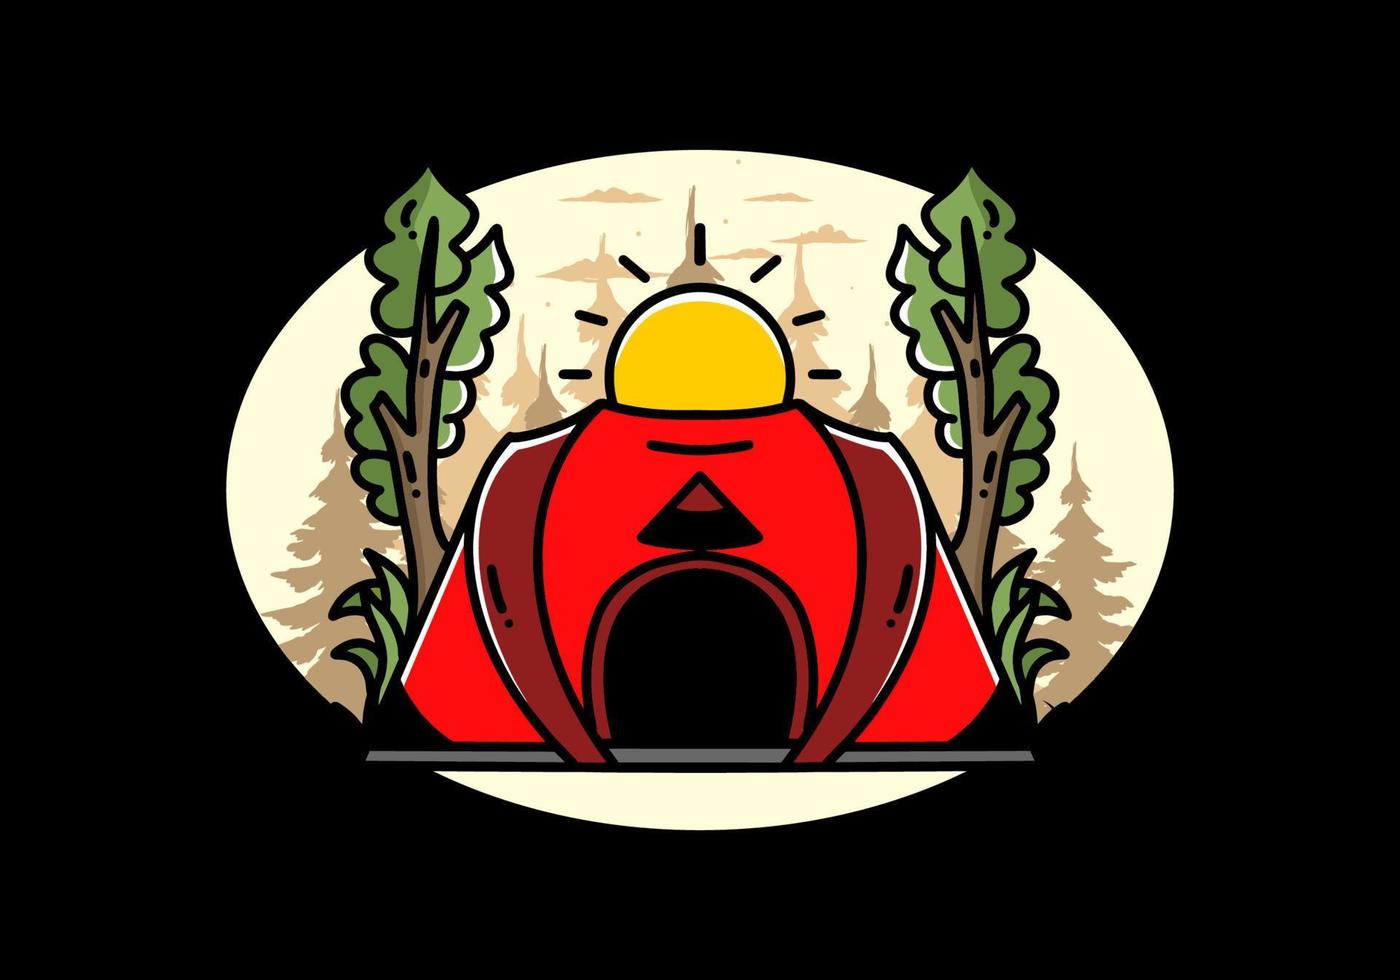 Big pop up tent for camping illustration badge design vector